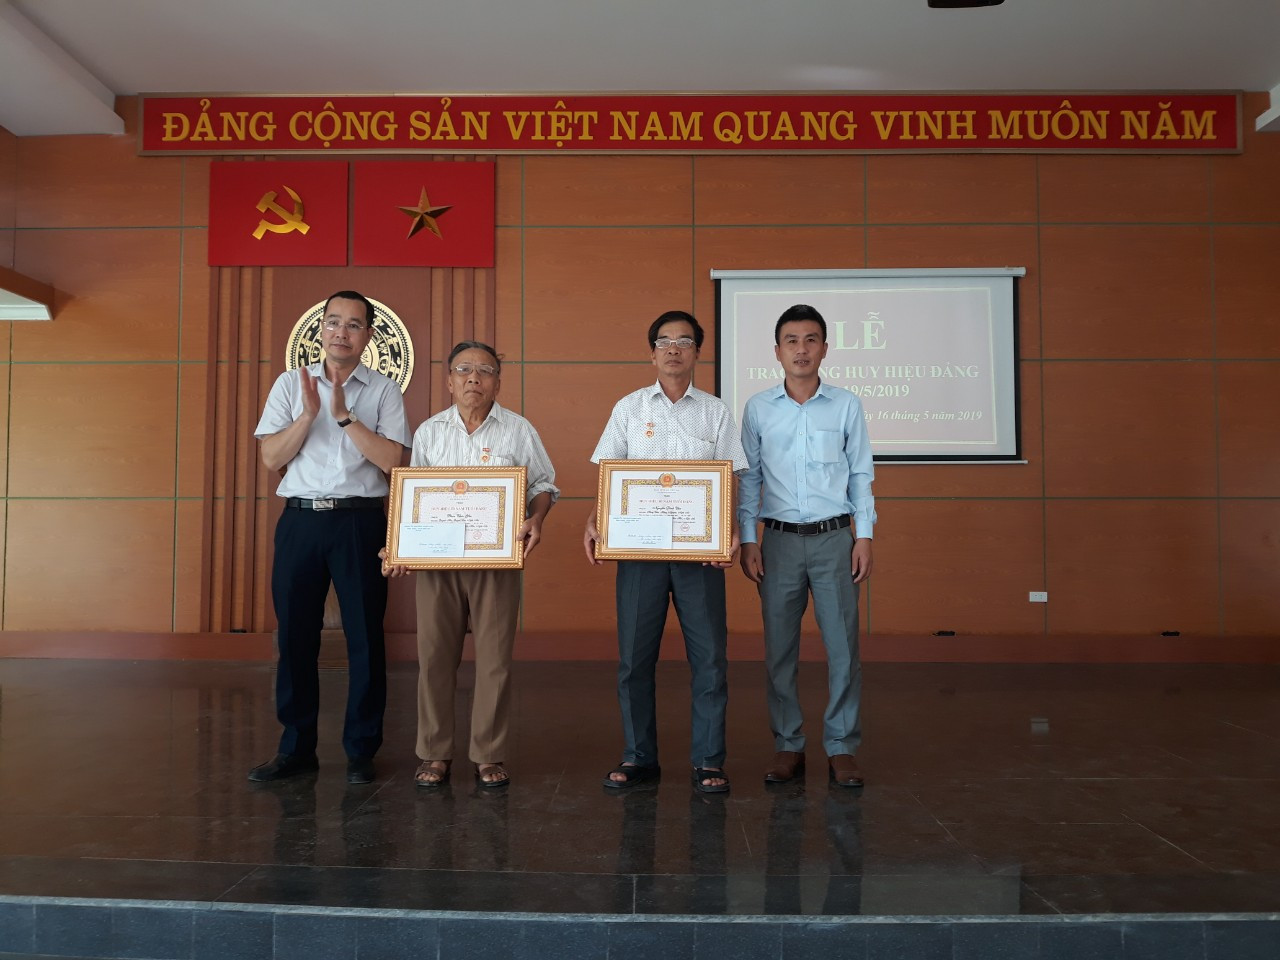 Đảng bộ phường Long Sơn trao huy hiệu Đảng cho 2 đảng viên. Ảnh: Minh Thái